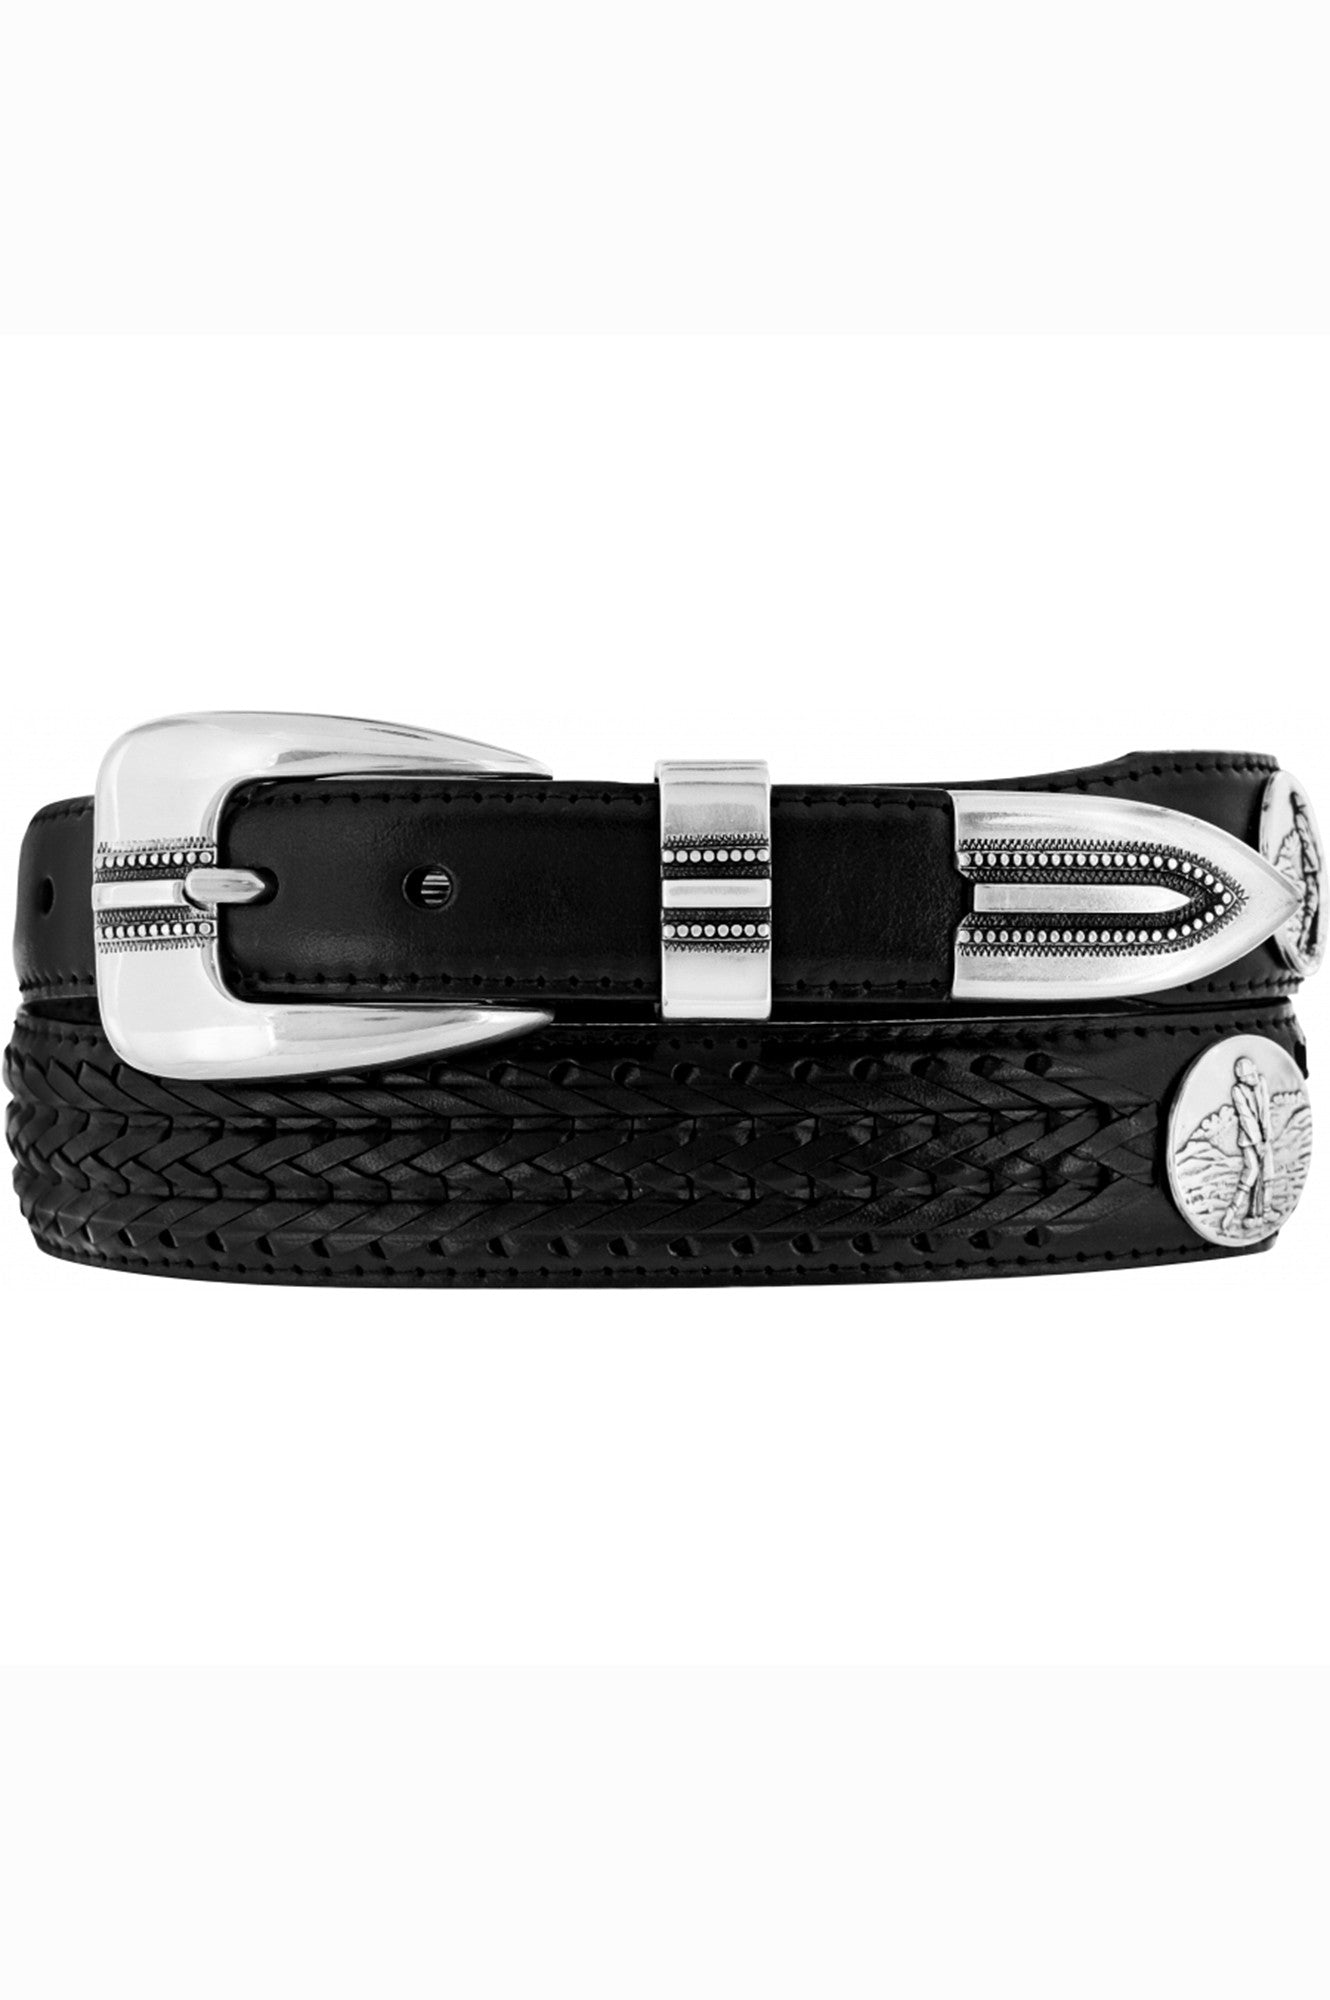 black leather belt, mens belt, black dress belt, golf belt, mens black golfer belt, black leather